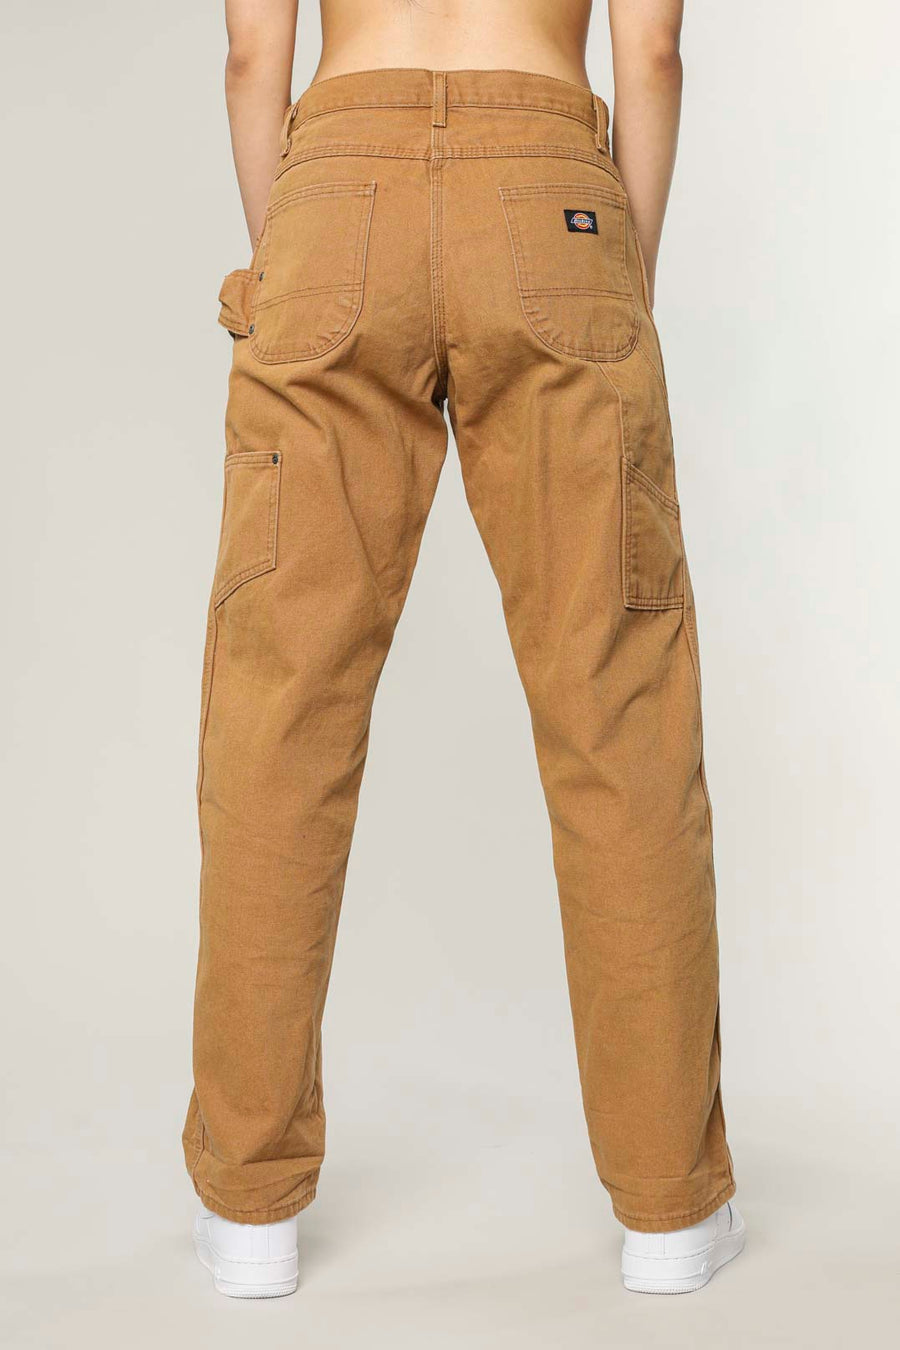 Vintage Dickies Work Pants - W32